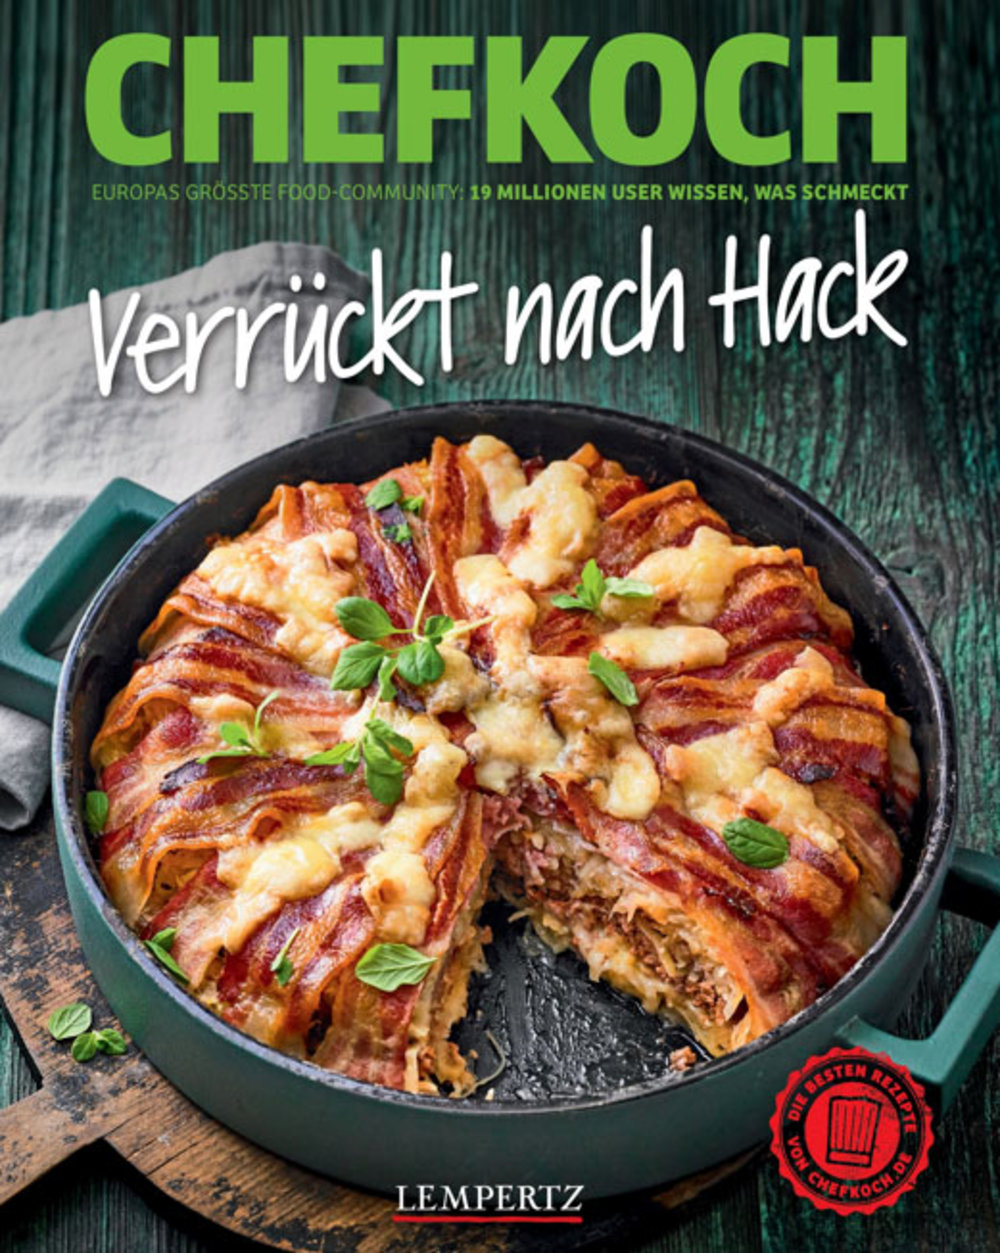 CHEFKOCH-Buch "Verrückt nach Hack"